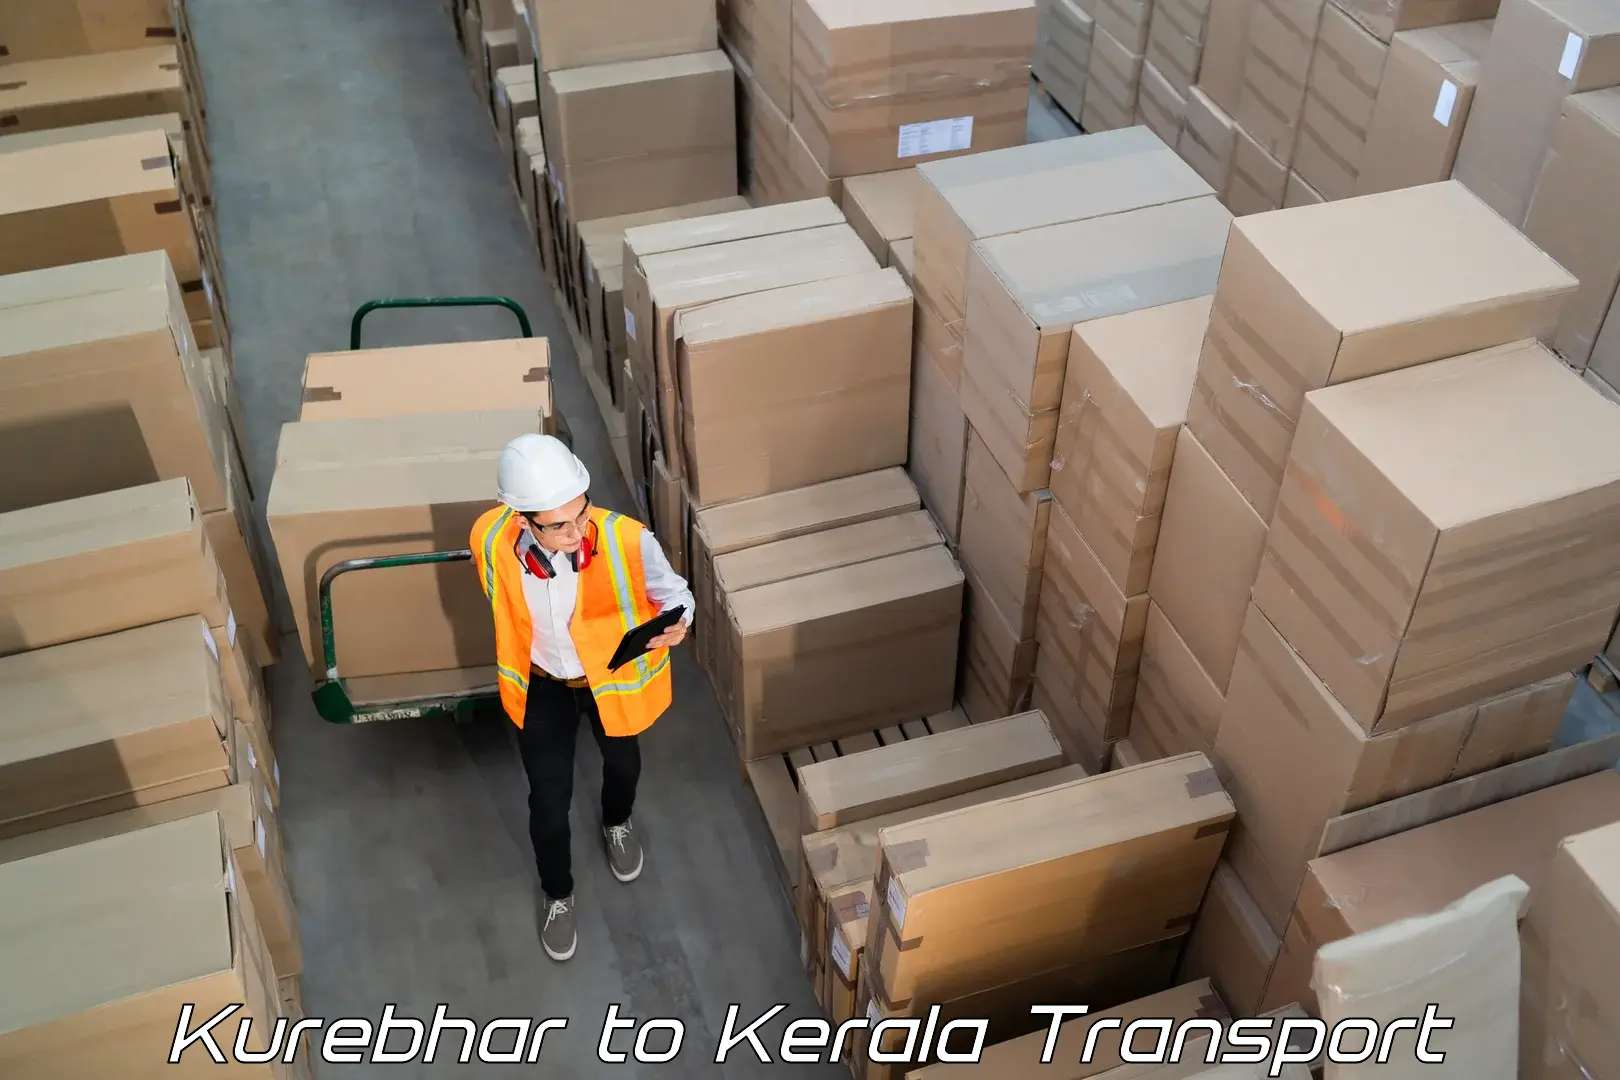 Container transport service Kurebhar to Kallikkad